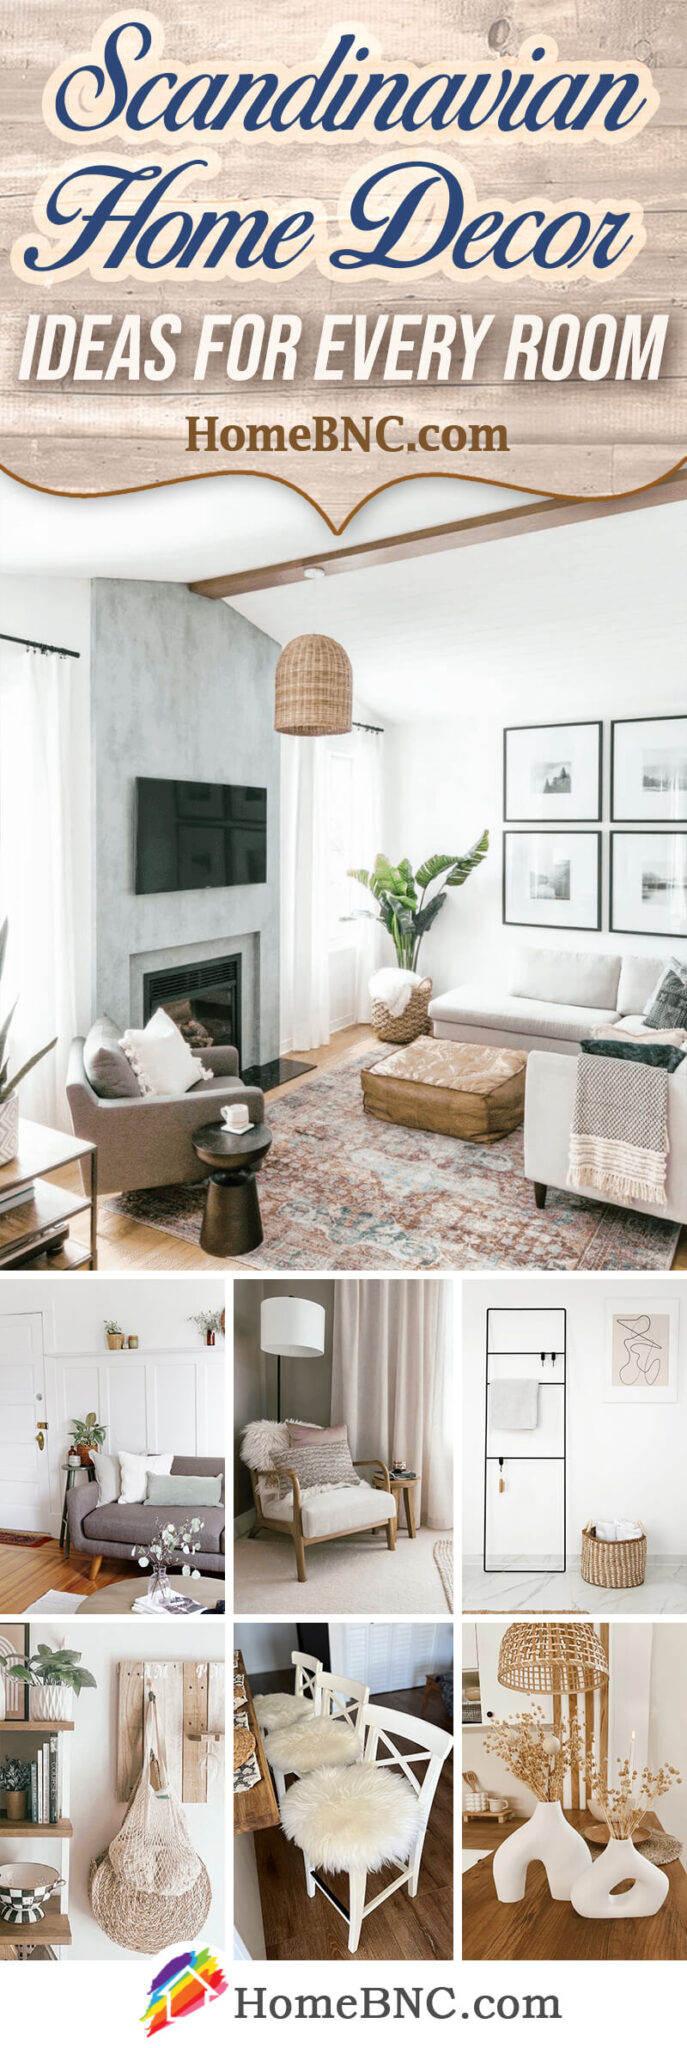 Scandinavian Home Decor Ideas Pinterest Share Homebnc 687x2048 